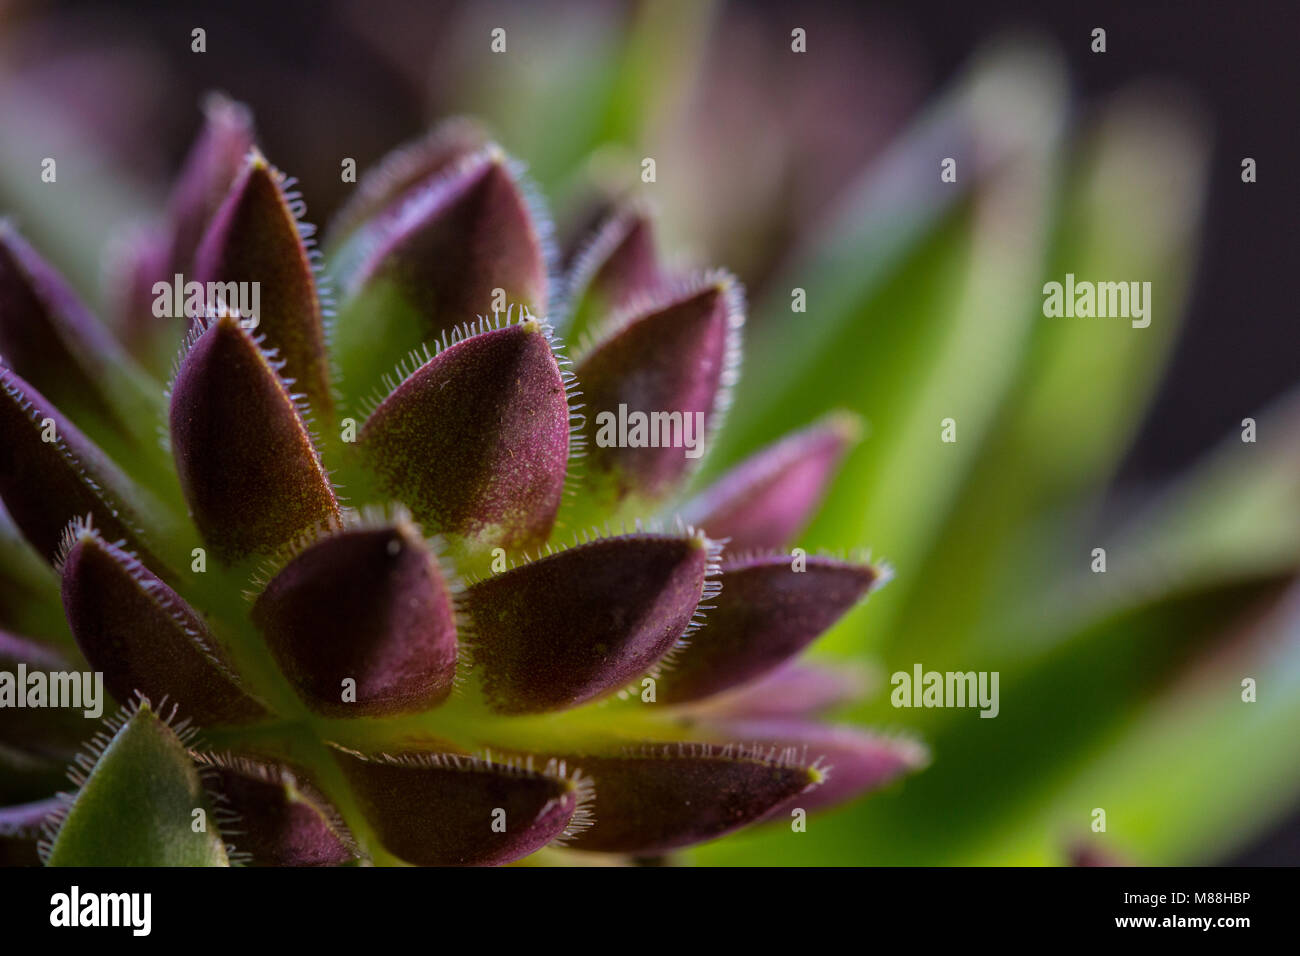 Close up image de sempervivums plantes grasses Houseleek montrant la texture et les détails des feuilles, Shepperton, Surrey, Royaume-Uni Banque D'Images